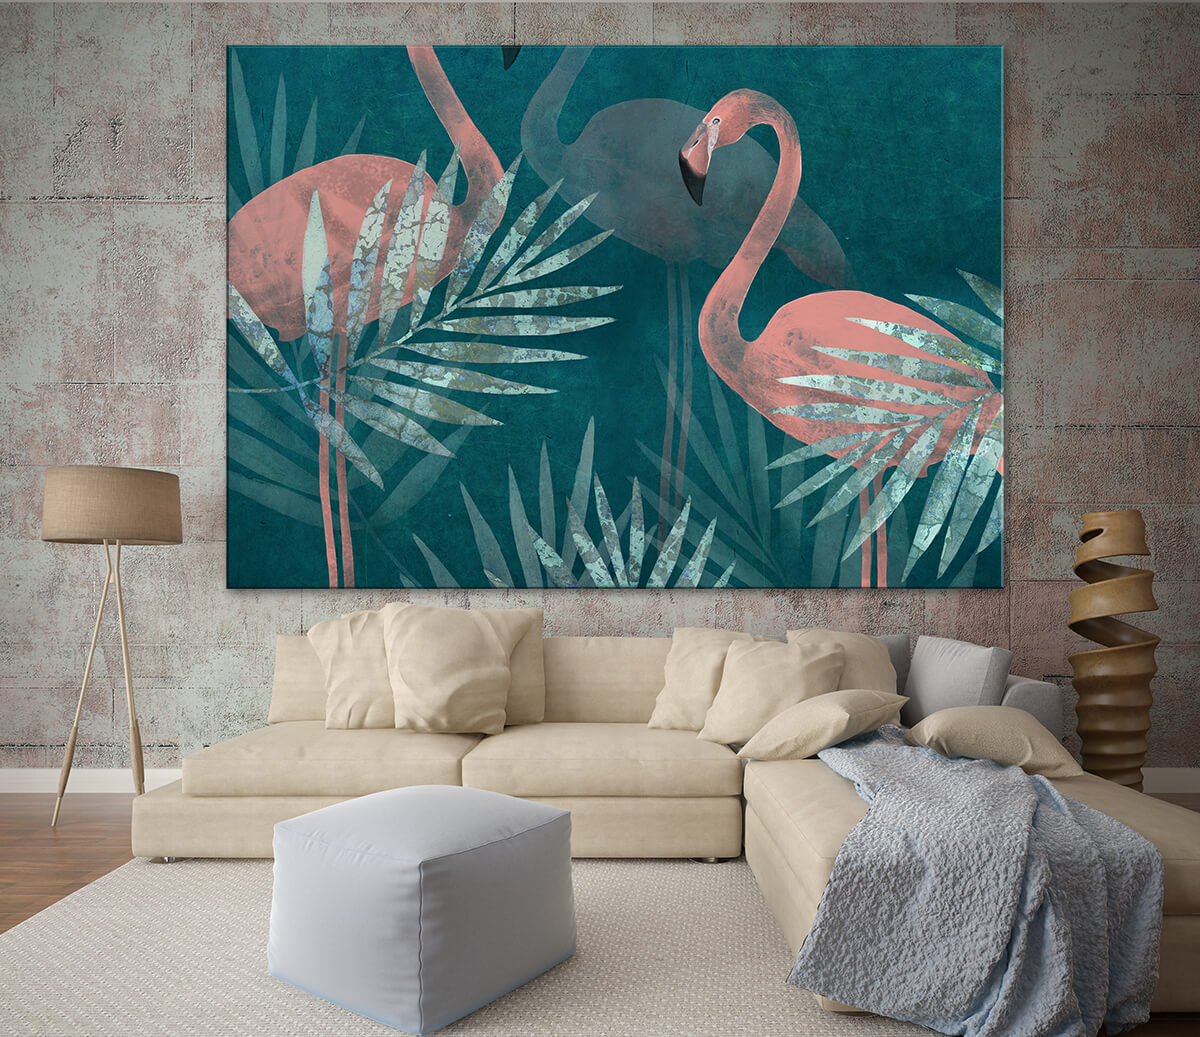 dekoracja ścienna w stylu egzotycznym - braz z flamingami